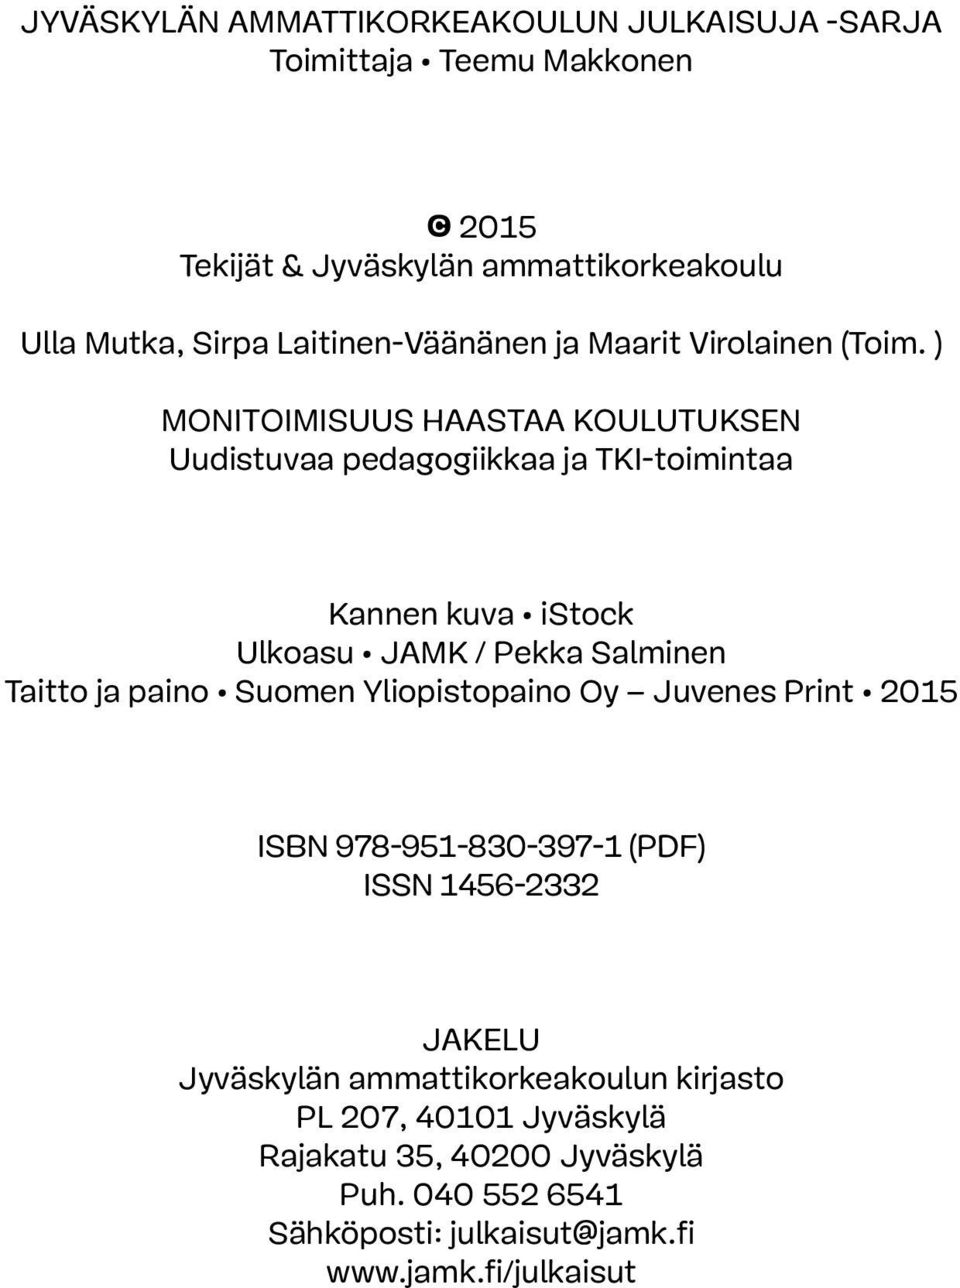 ) Monitoimisuus haastaa koulutuksen Uudistuvaa pedagogiikkaa ja TKI-toimintaa Kannen kuva istock Ulkoasu JAMK / Pekka Salminen Taitto ja paino